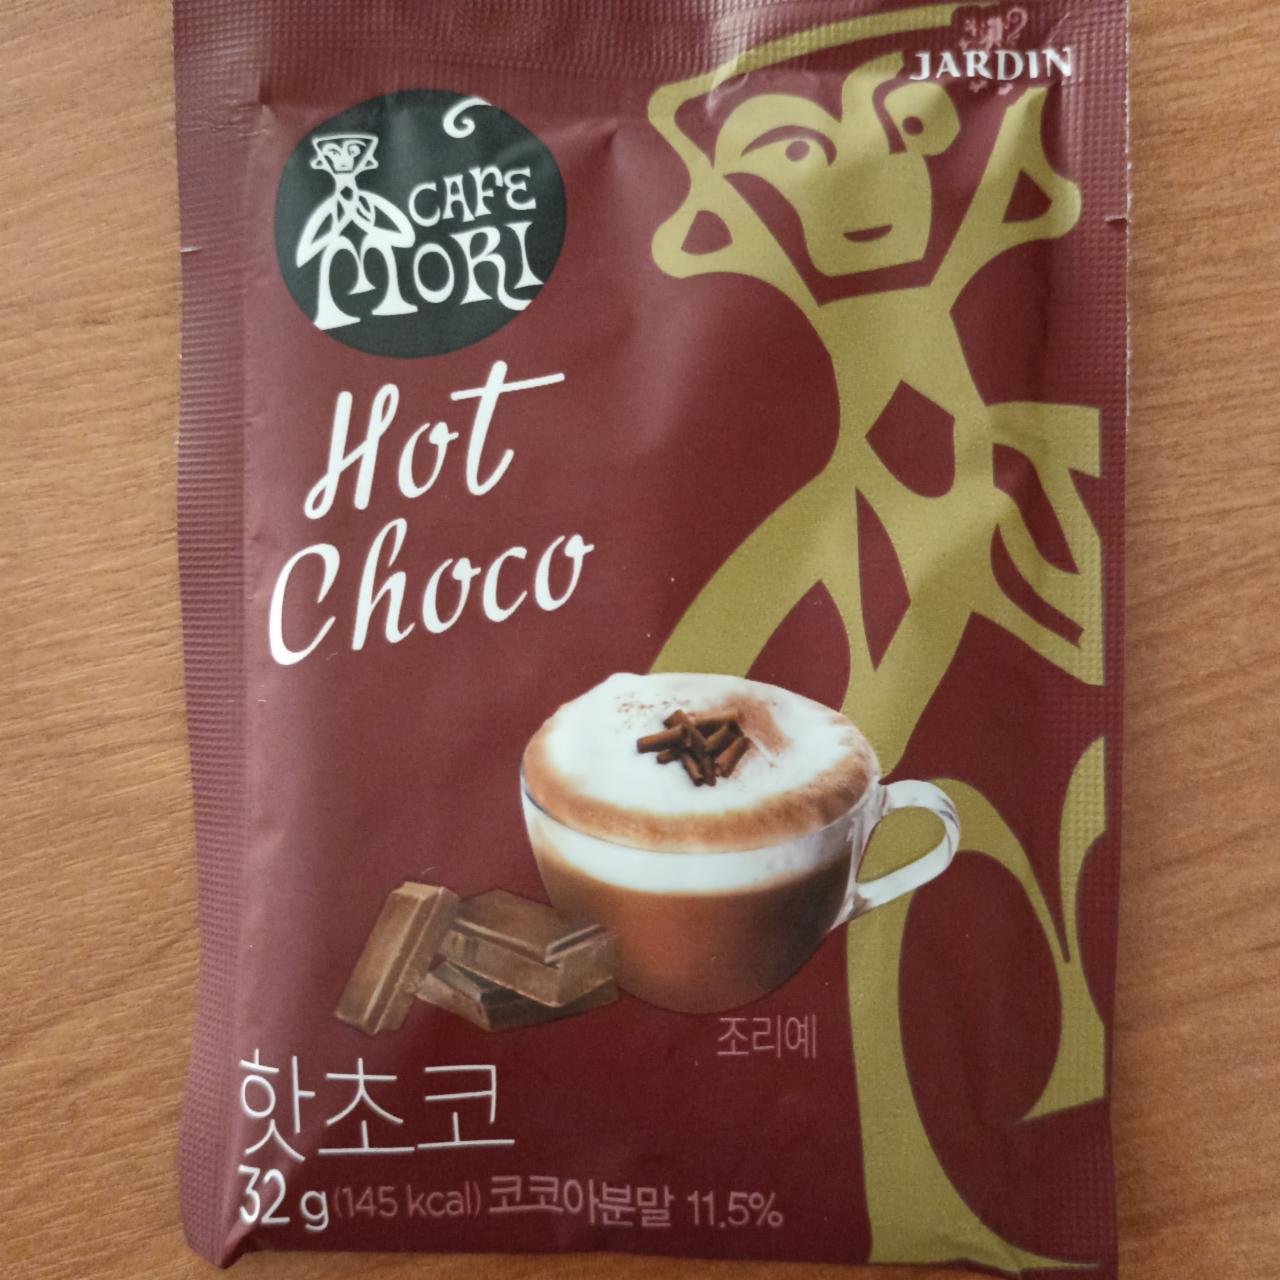 Фото - Напиток горячий шоколад растворимый Cafe Mori